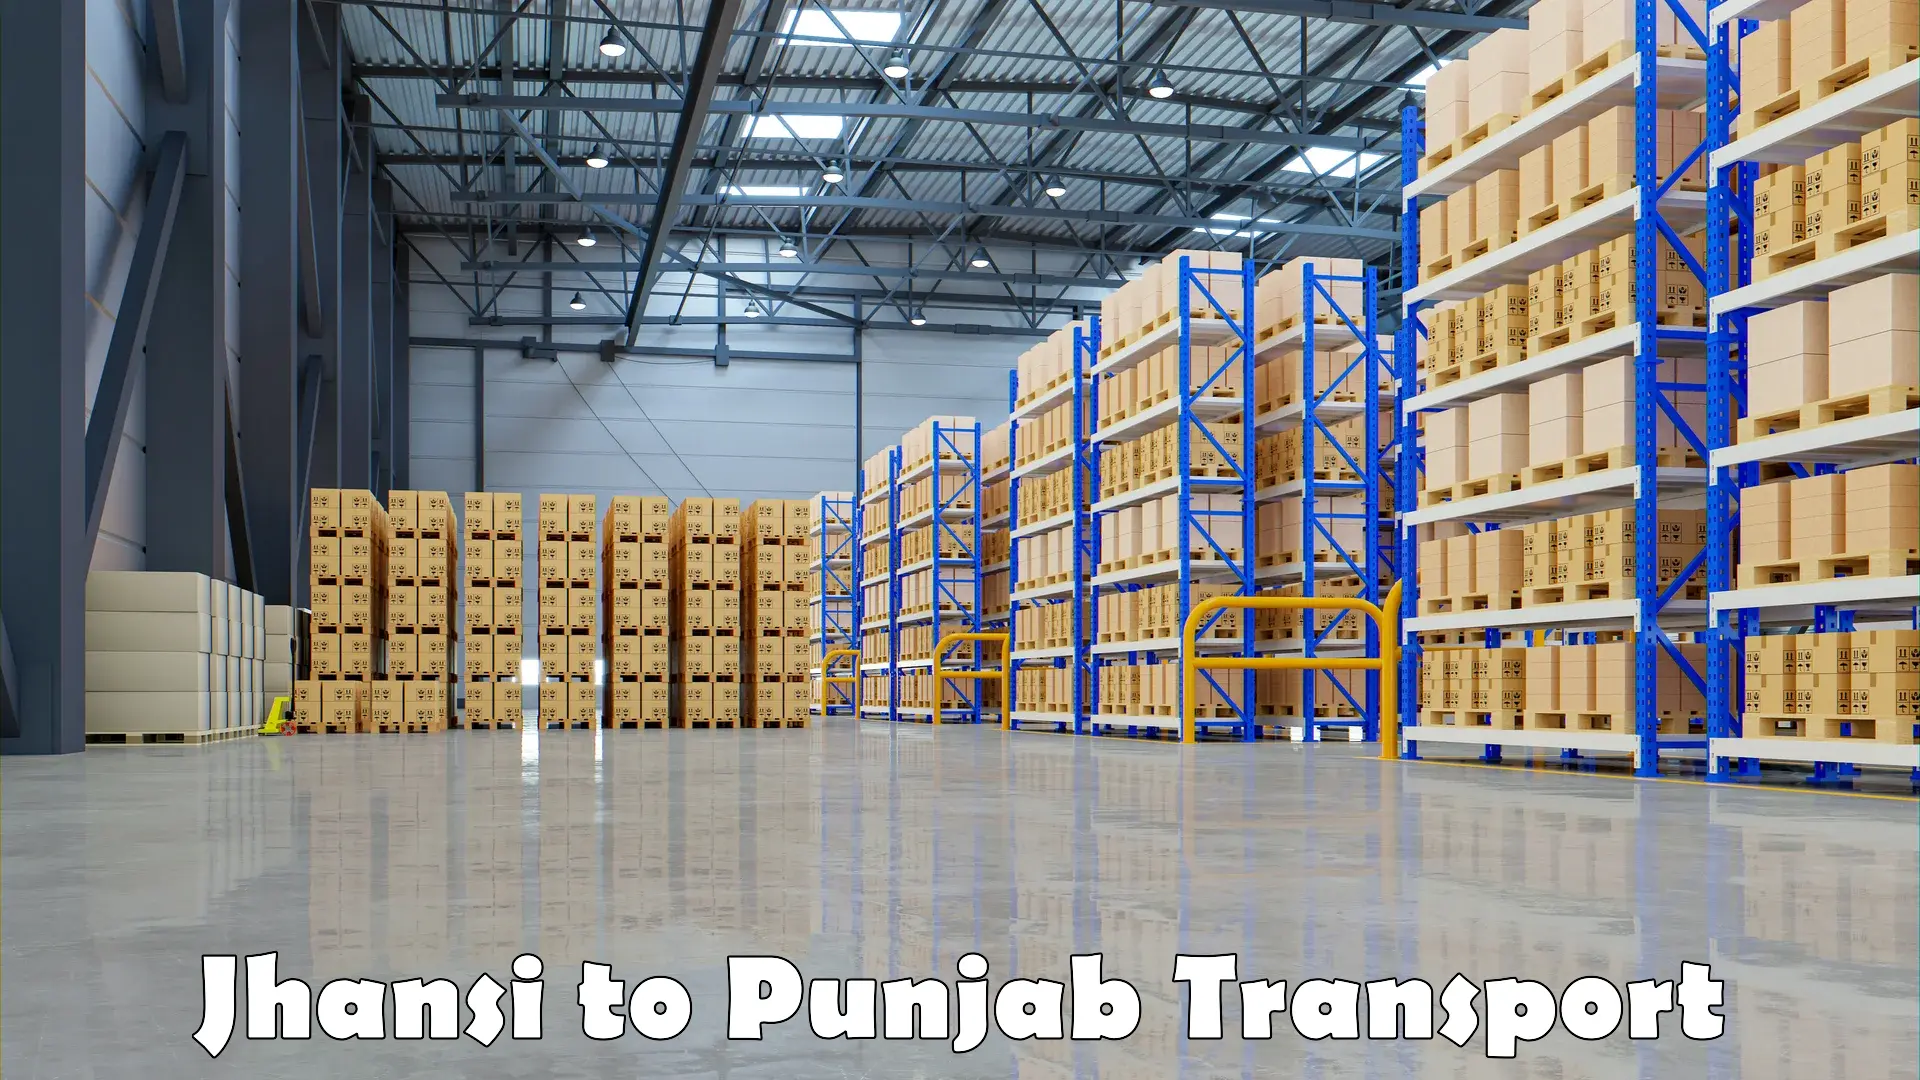 Cargo train transport services Jhansi to Punjab